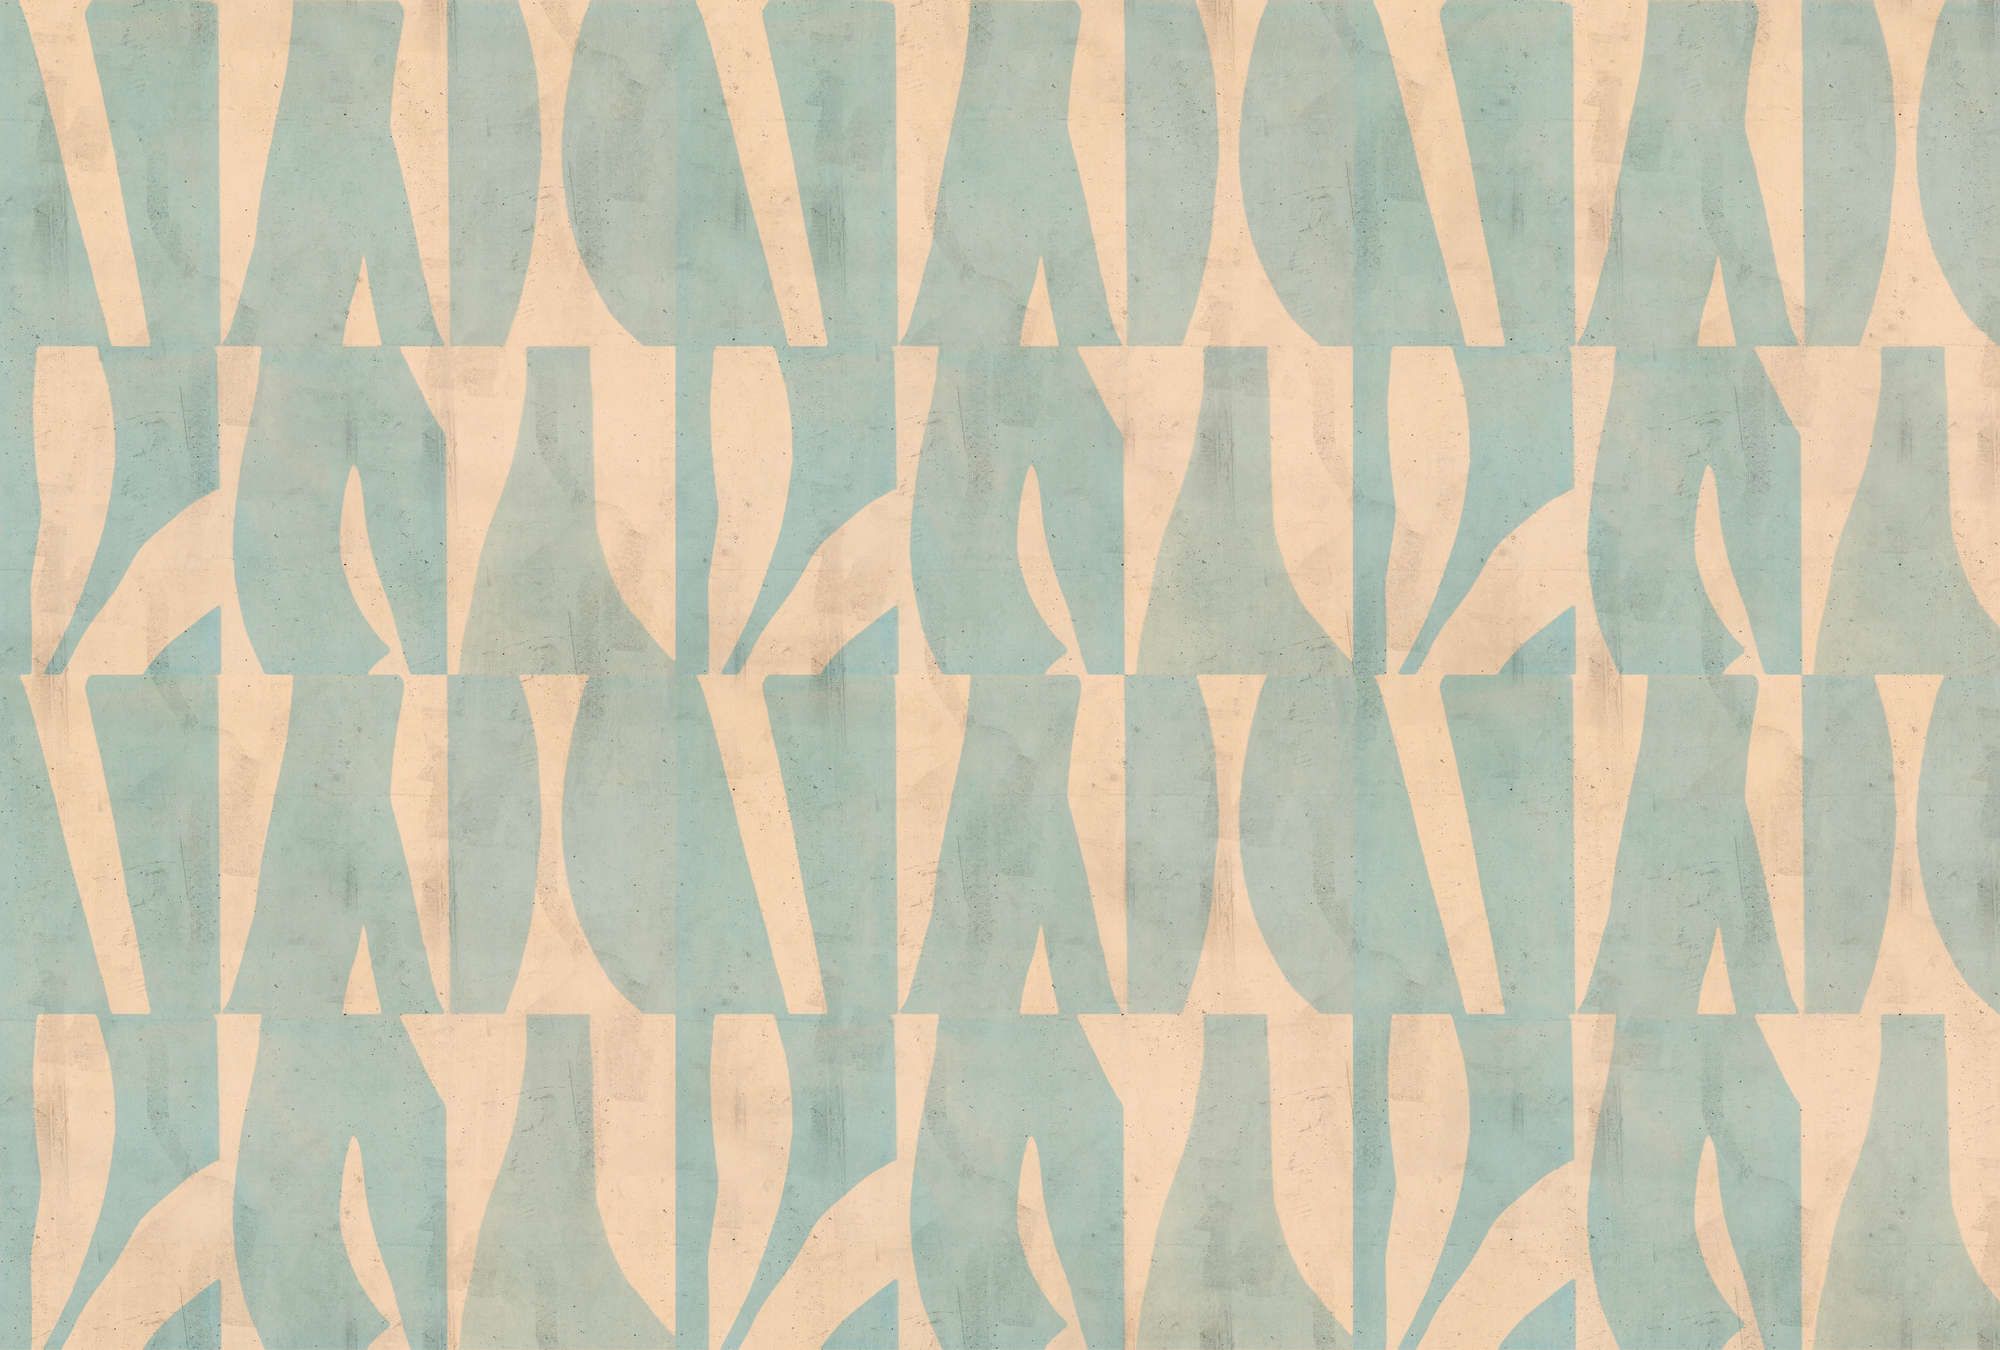             Fototapete »laila« - Grafisches Muster auf Betonputz-Struktur – Beige, Mintgrün | Glattes, leicht perlmutt-schimmerndes Vlies
        